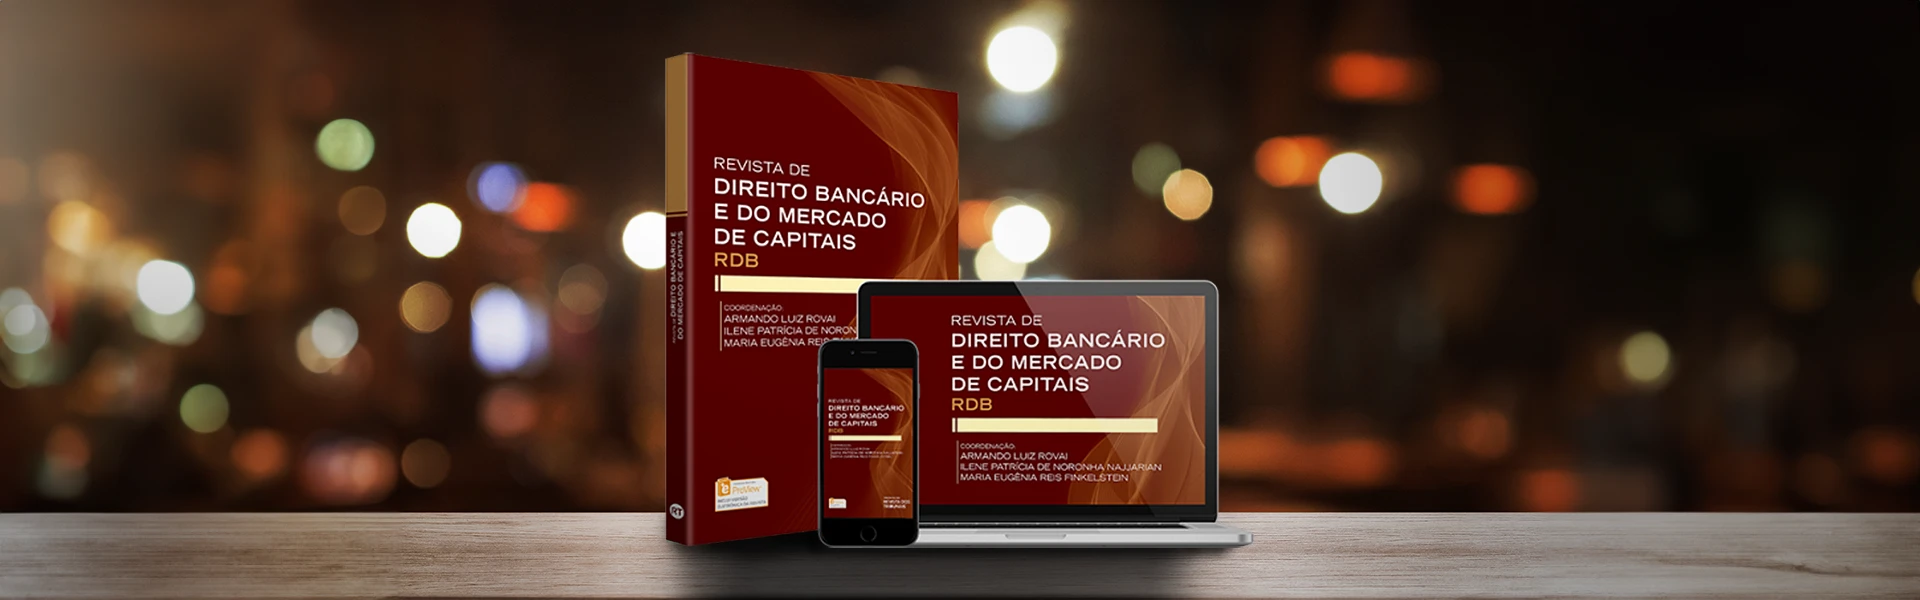 Revista de Direito Bancário e do Mercado de Capitais